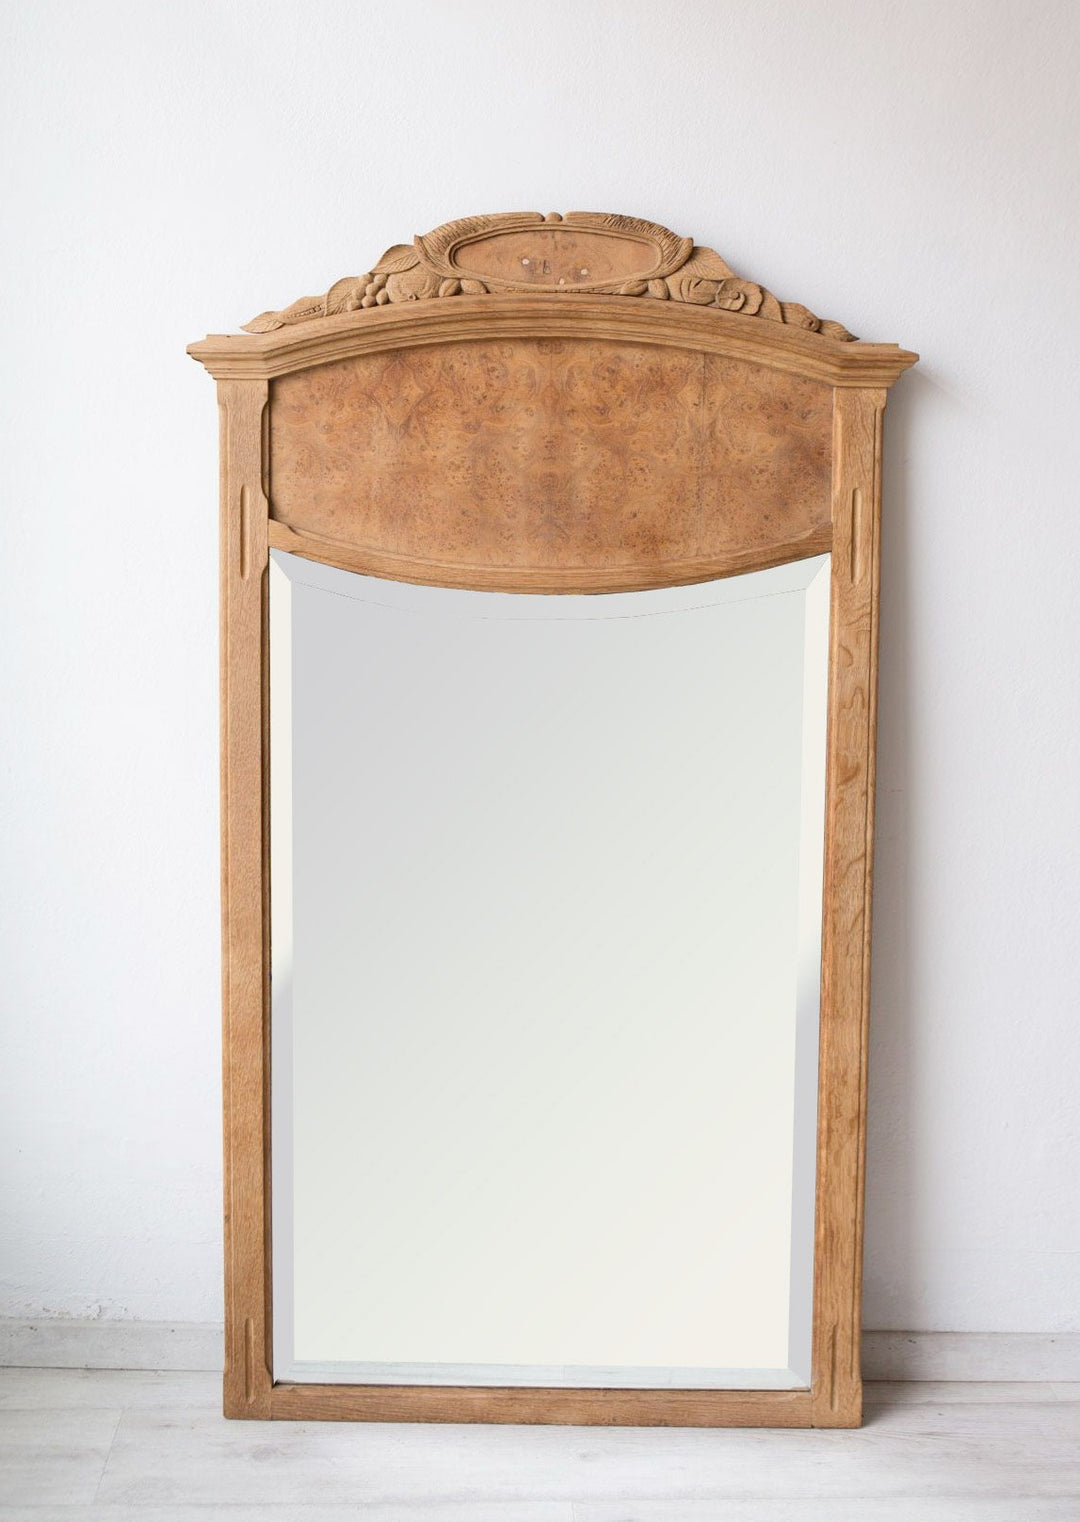 Gran antiguo espejo francés roble decapado art decó (VENDIDO)